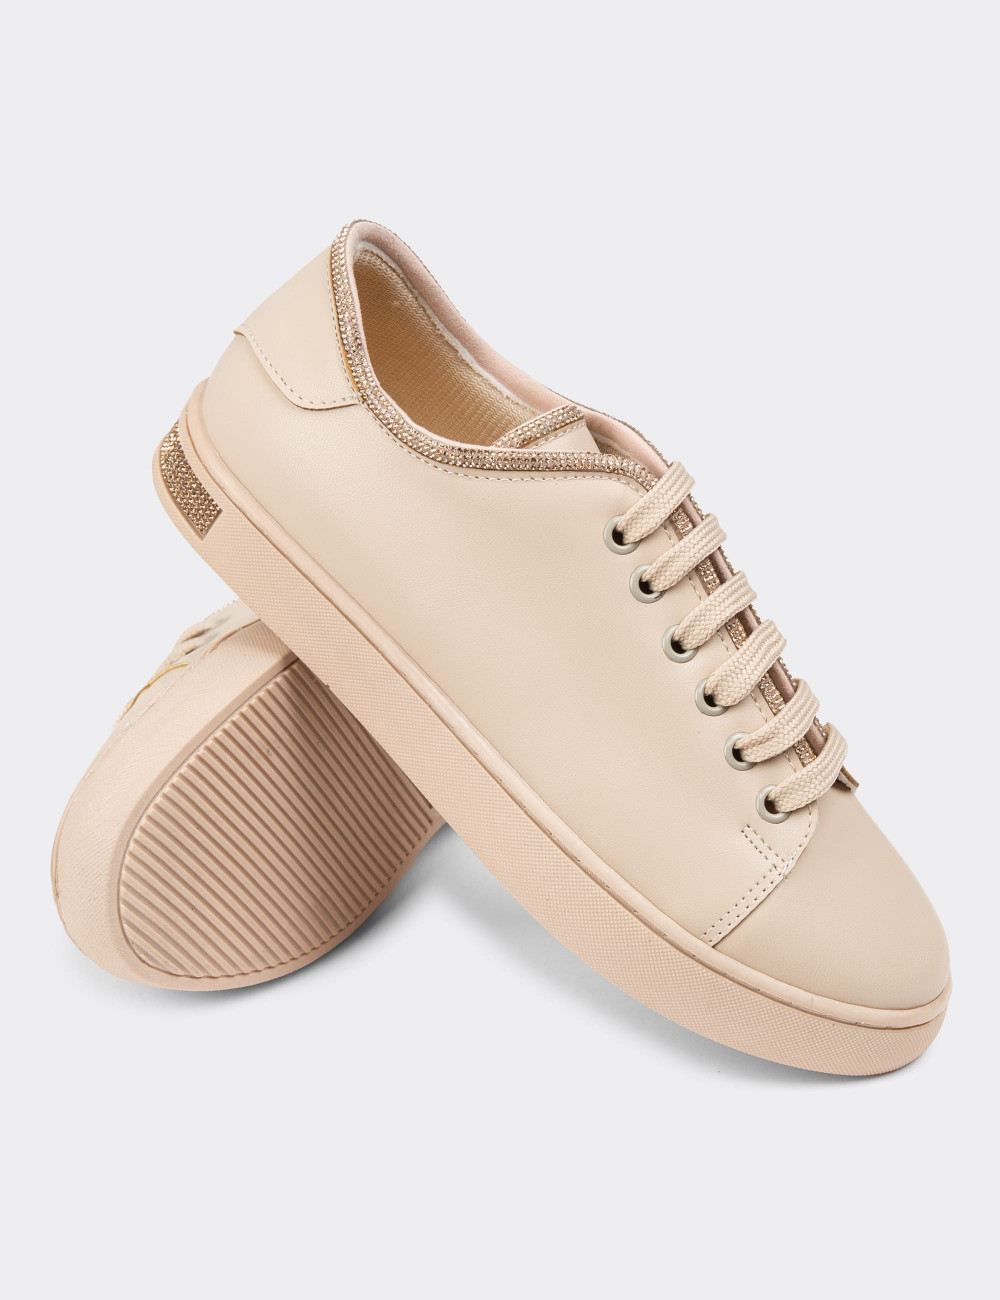 Bej Rengi Kadın Taşlı Sneaker Ayakkabı - K0600ZBEJC01